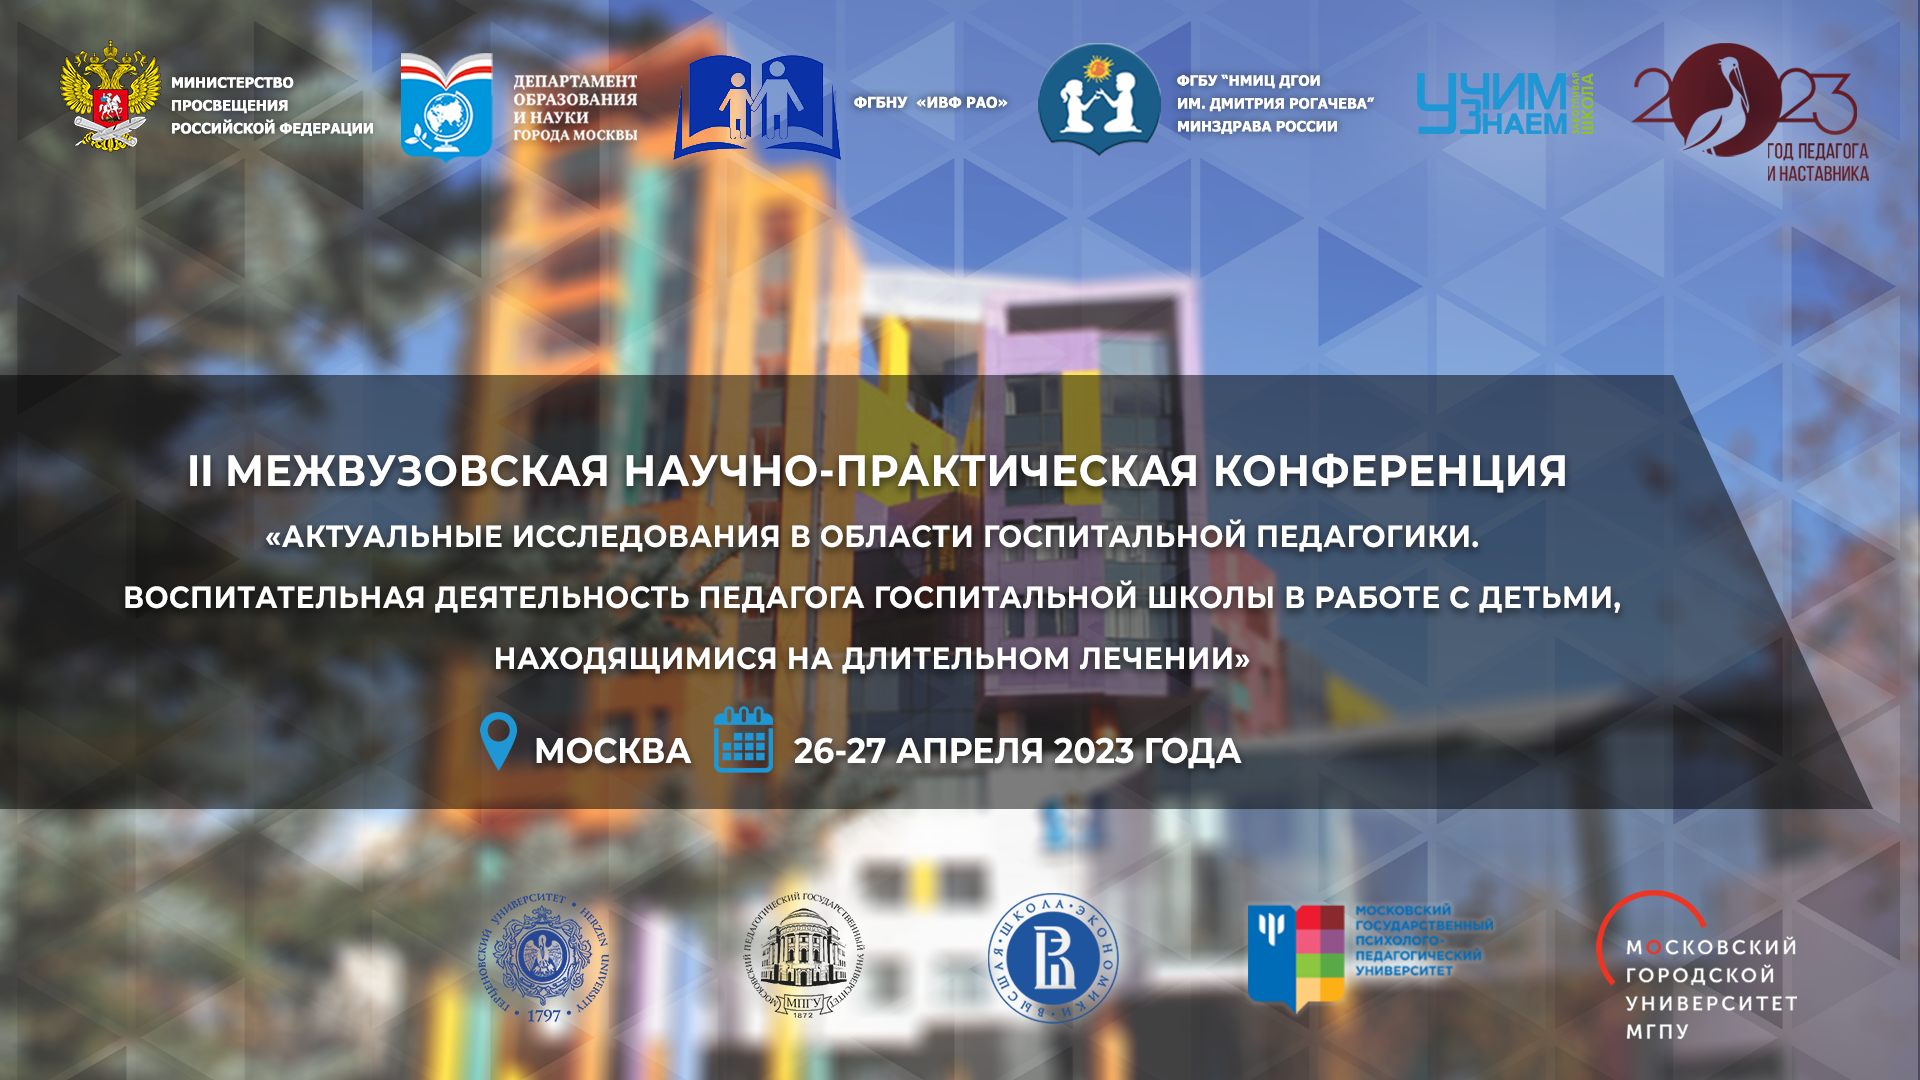 Второй день II Межвузовской научно-практической конференции "Актуальные исследования в области госпитальной педагогики"